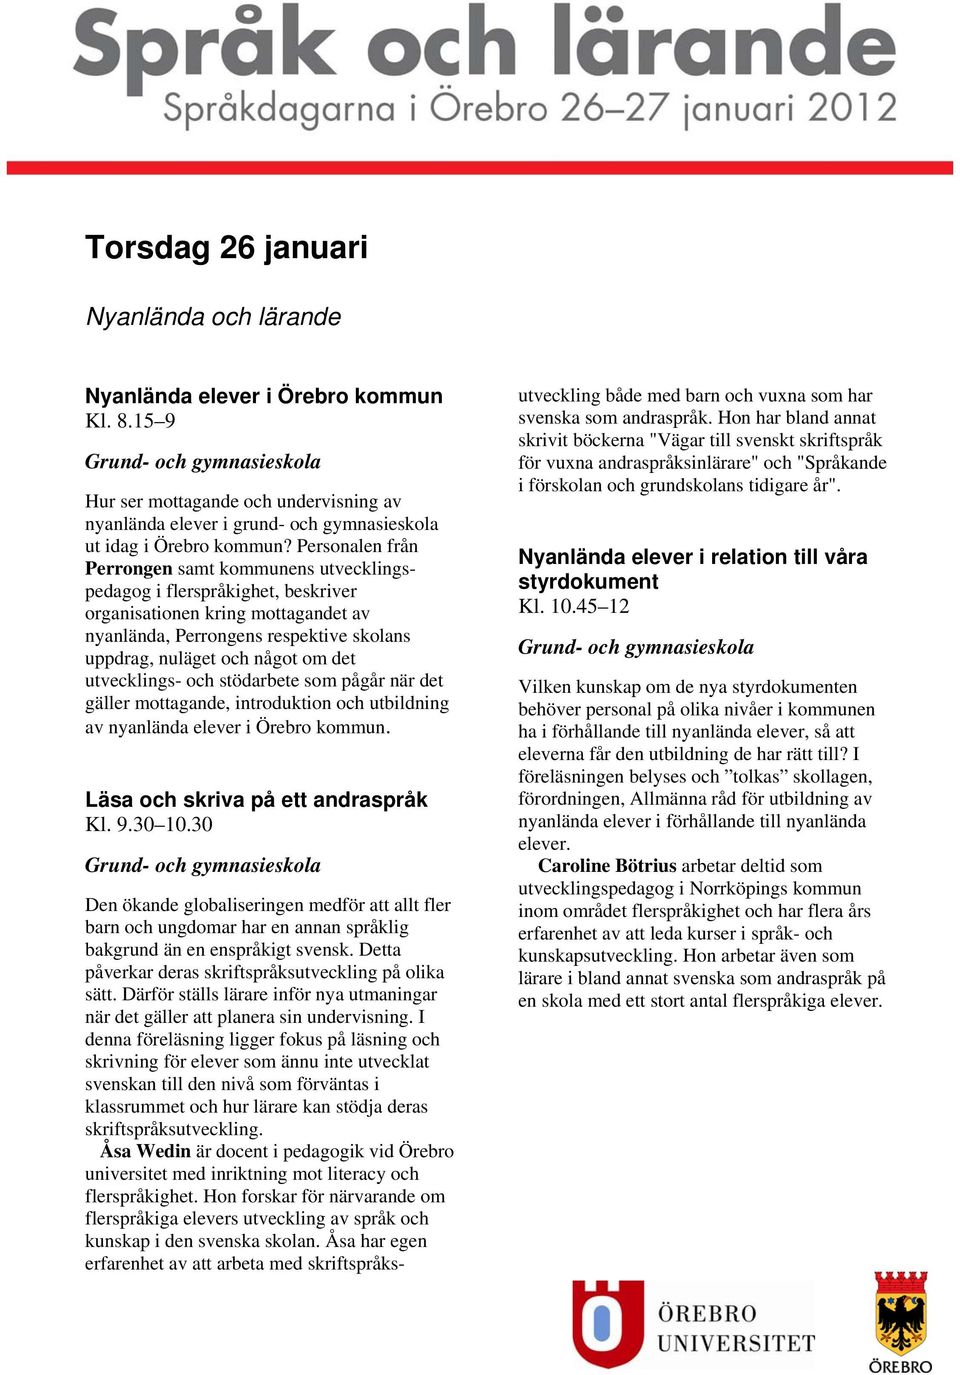 utvecklings- och stödarbete som pågår när det gäller mottagande, introduktion och utbildning av nyanlända elever i Örebro kommun. Kl. 9.30 10.